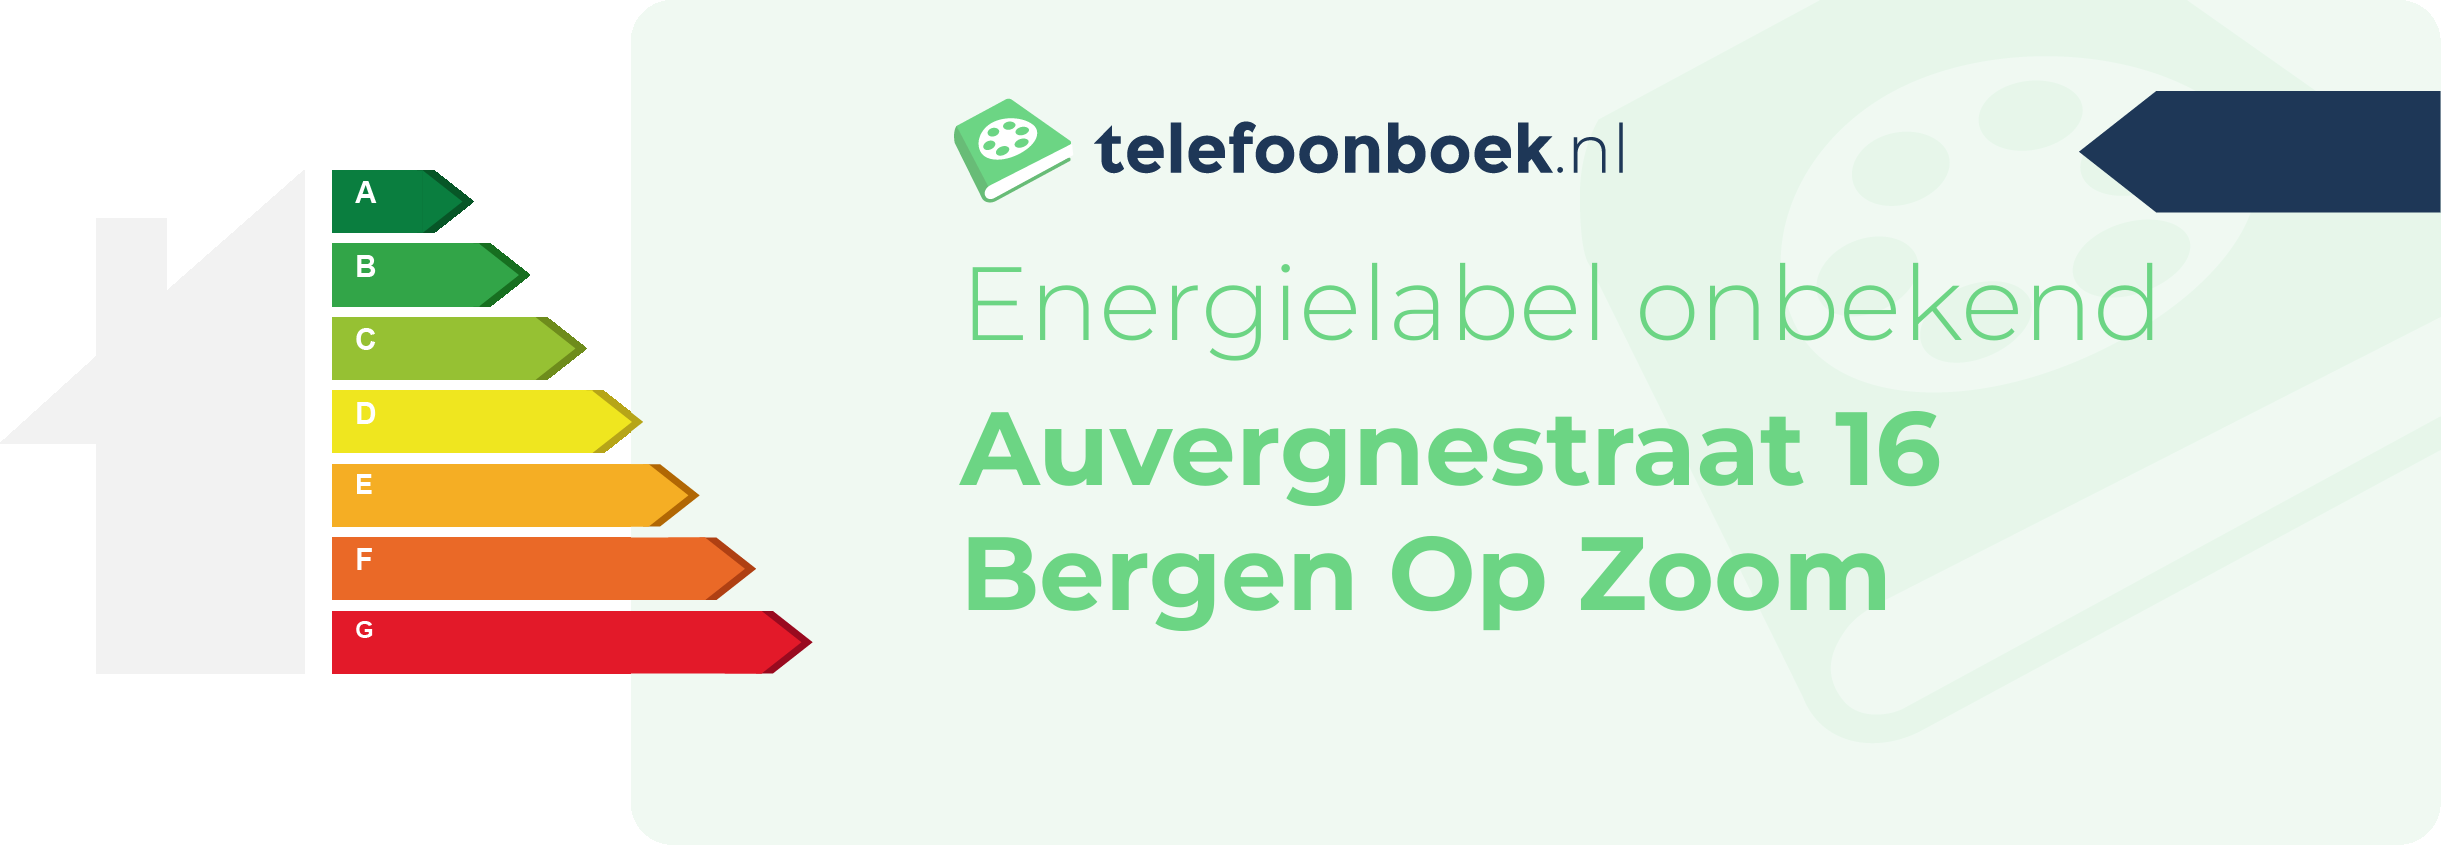 Energielabel Auvergnestraat 16 Bergen Op Zoom